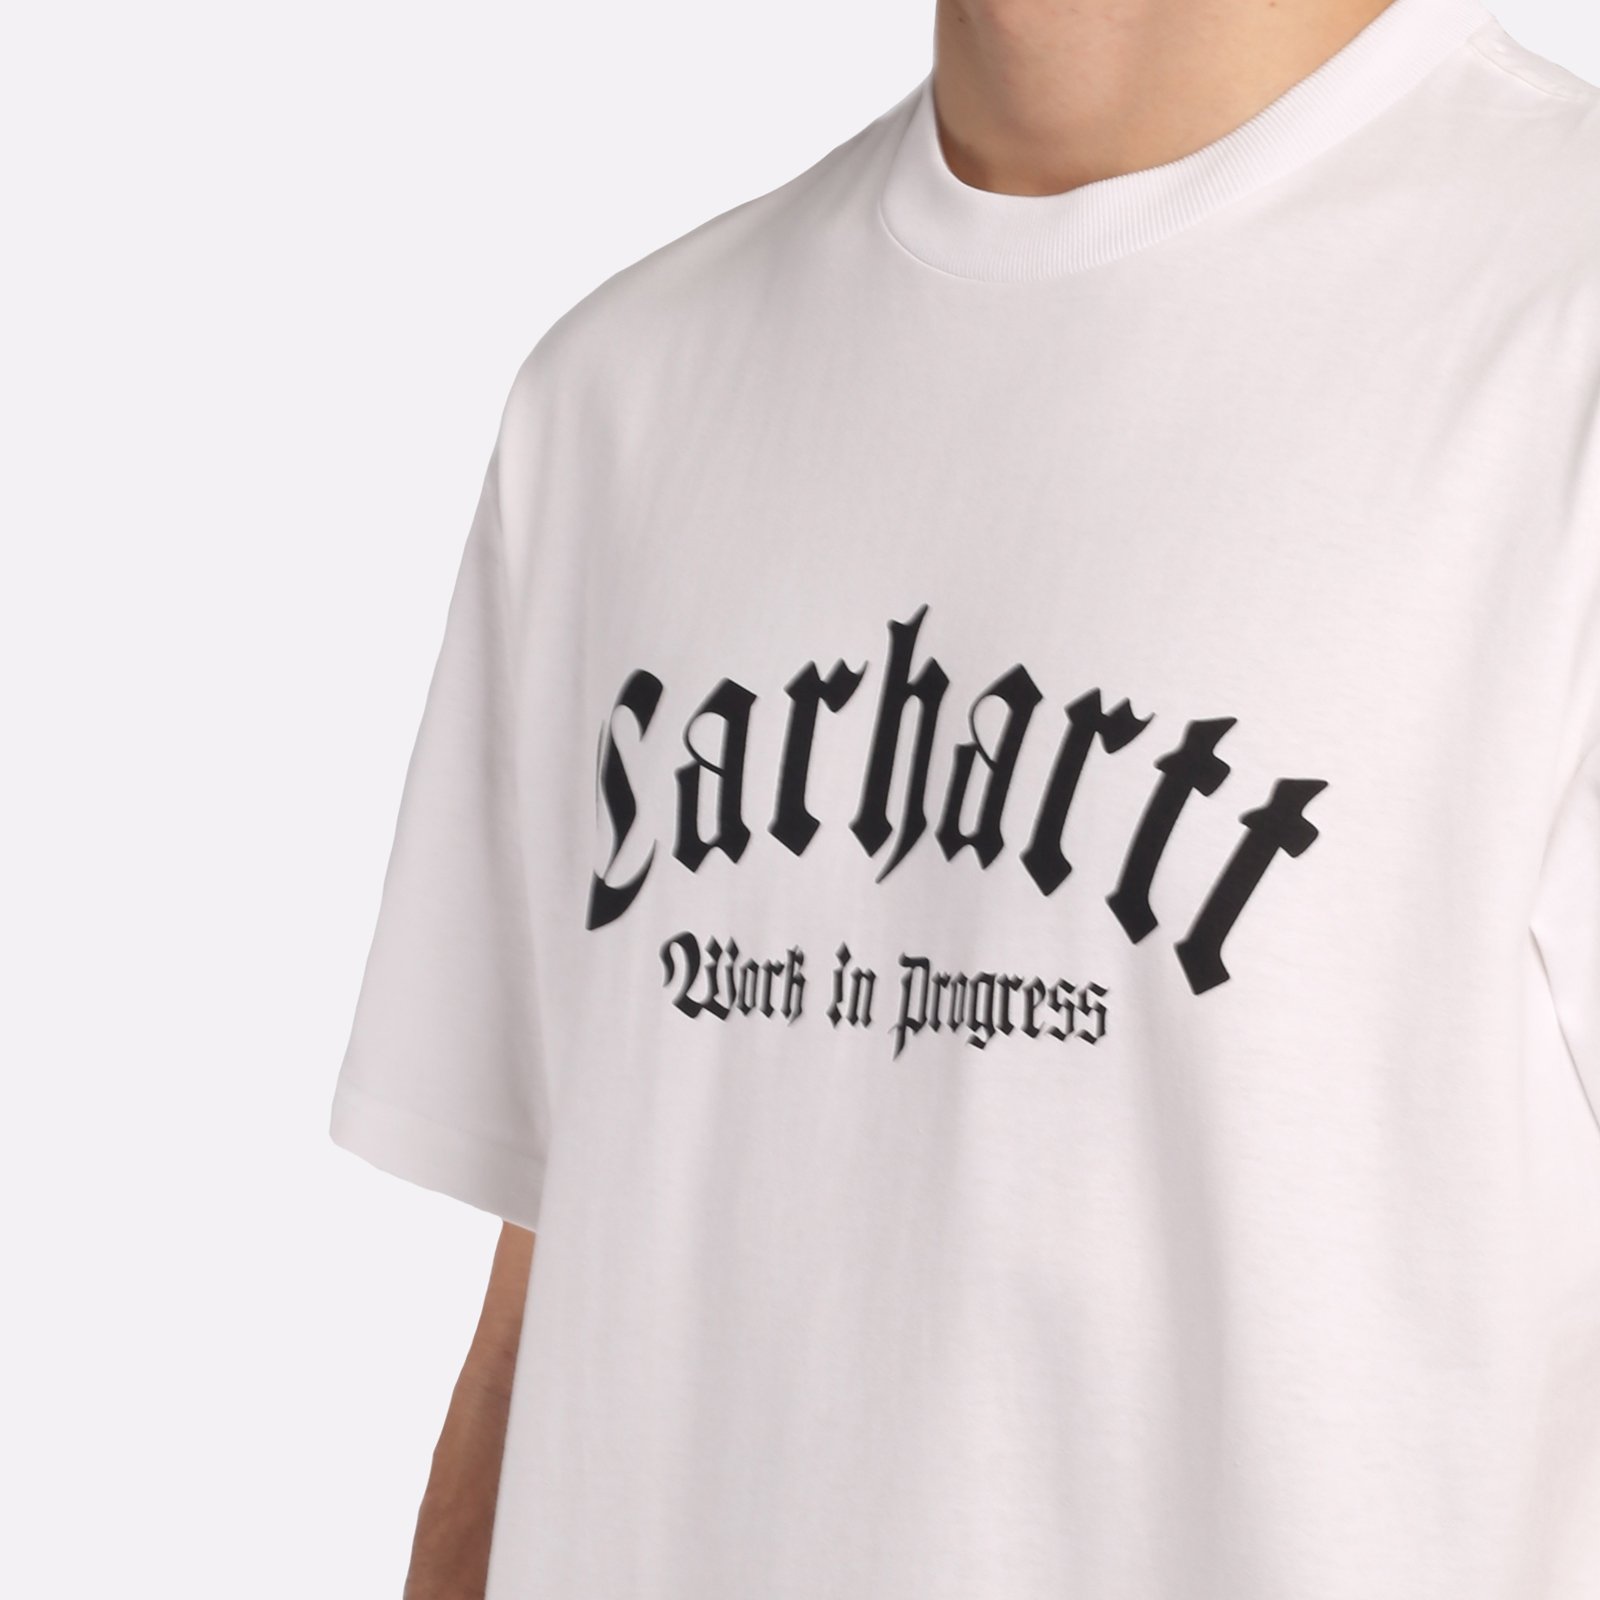 мужская белая футболка Carhartt WIP S/S Onyx T-Shirt I032875-white/black - цена, описание, фото 4